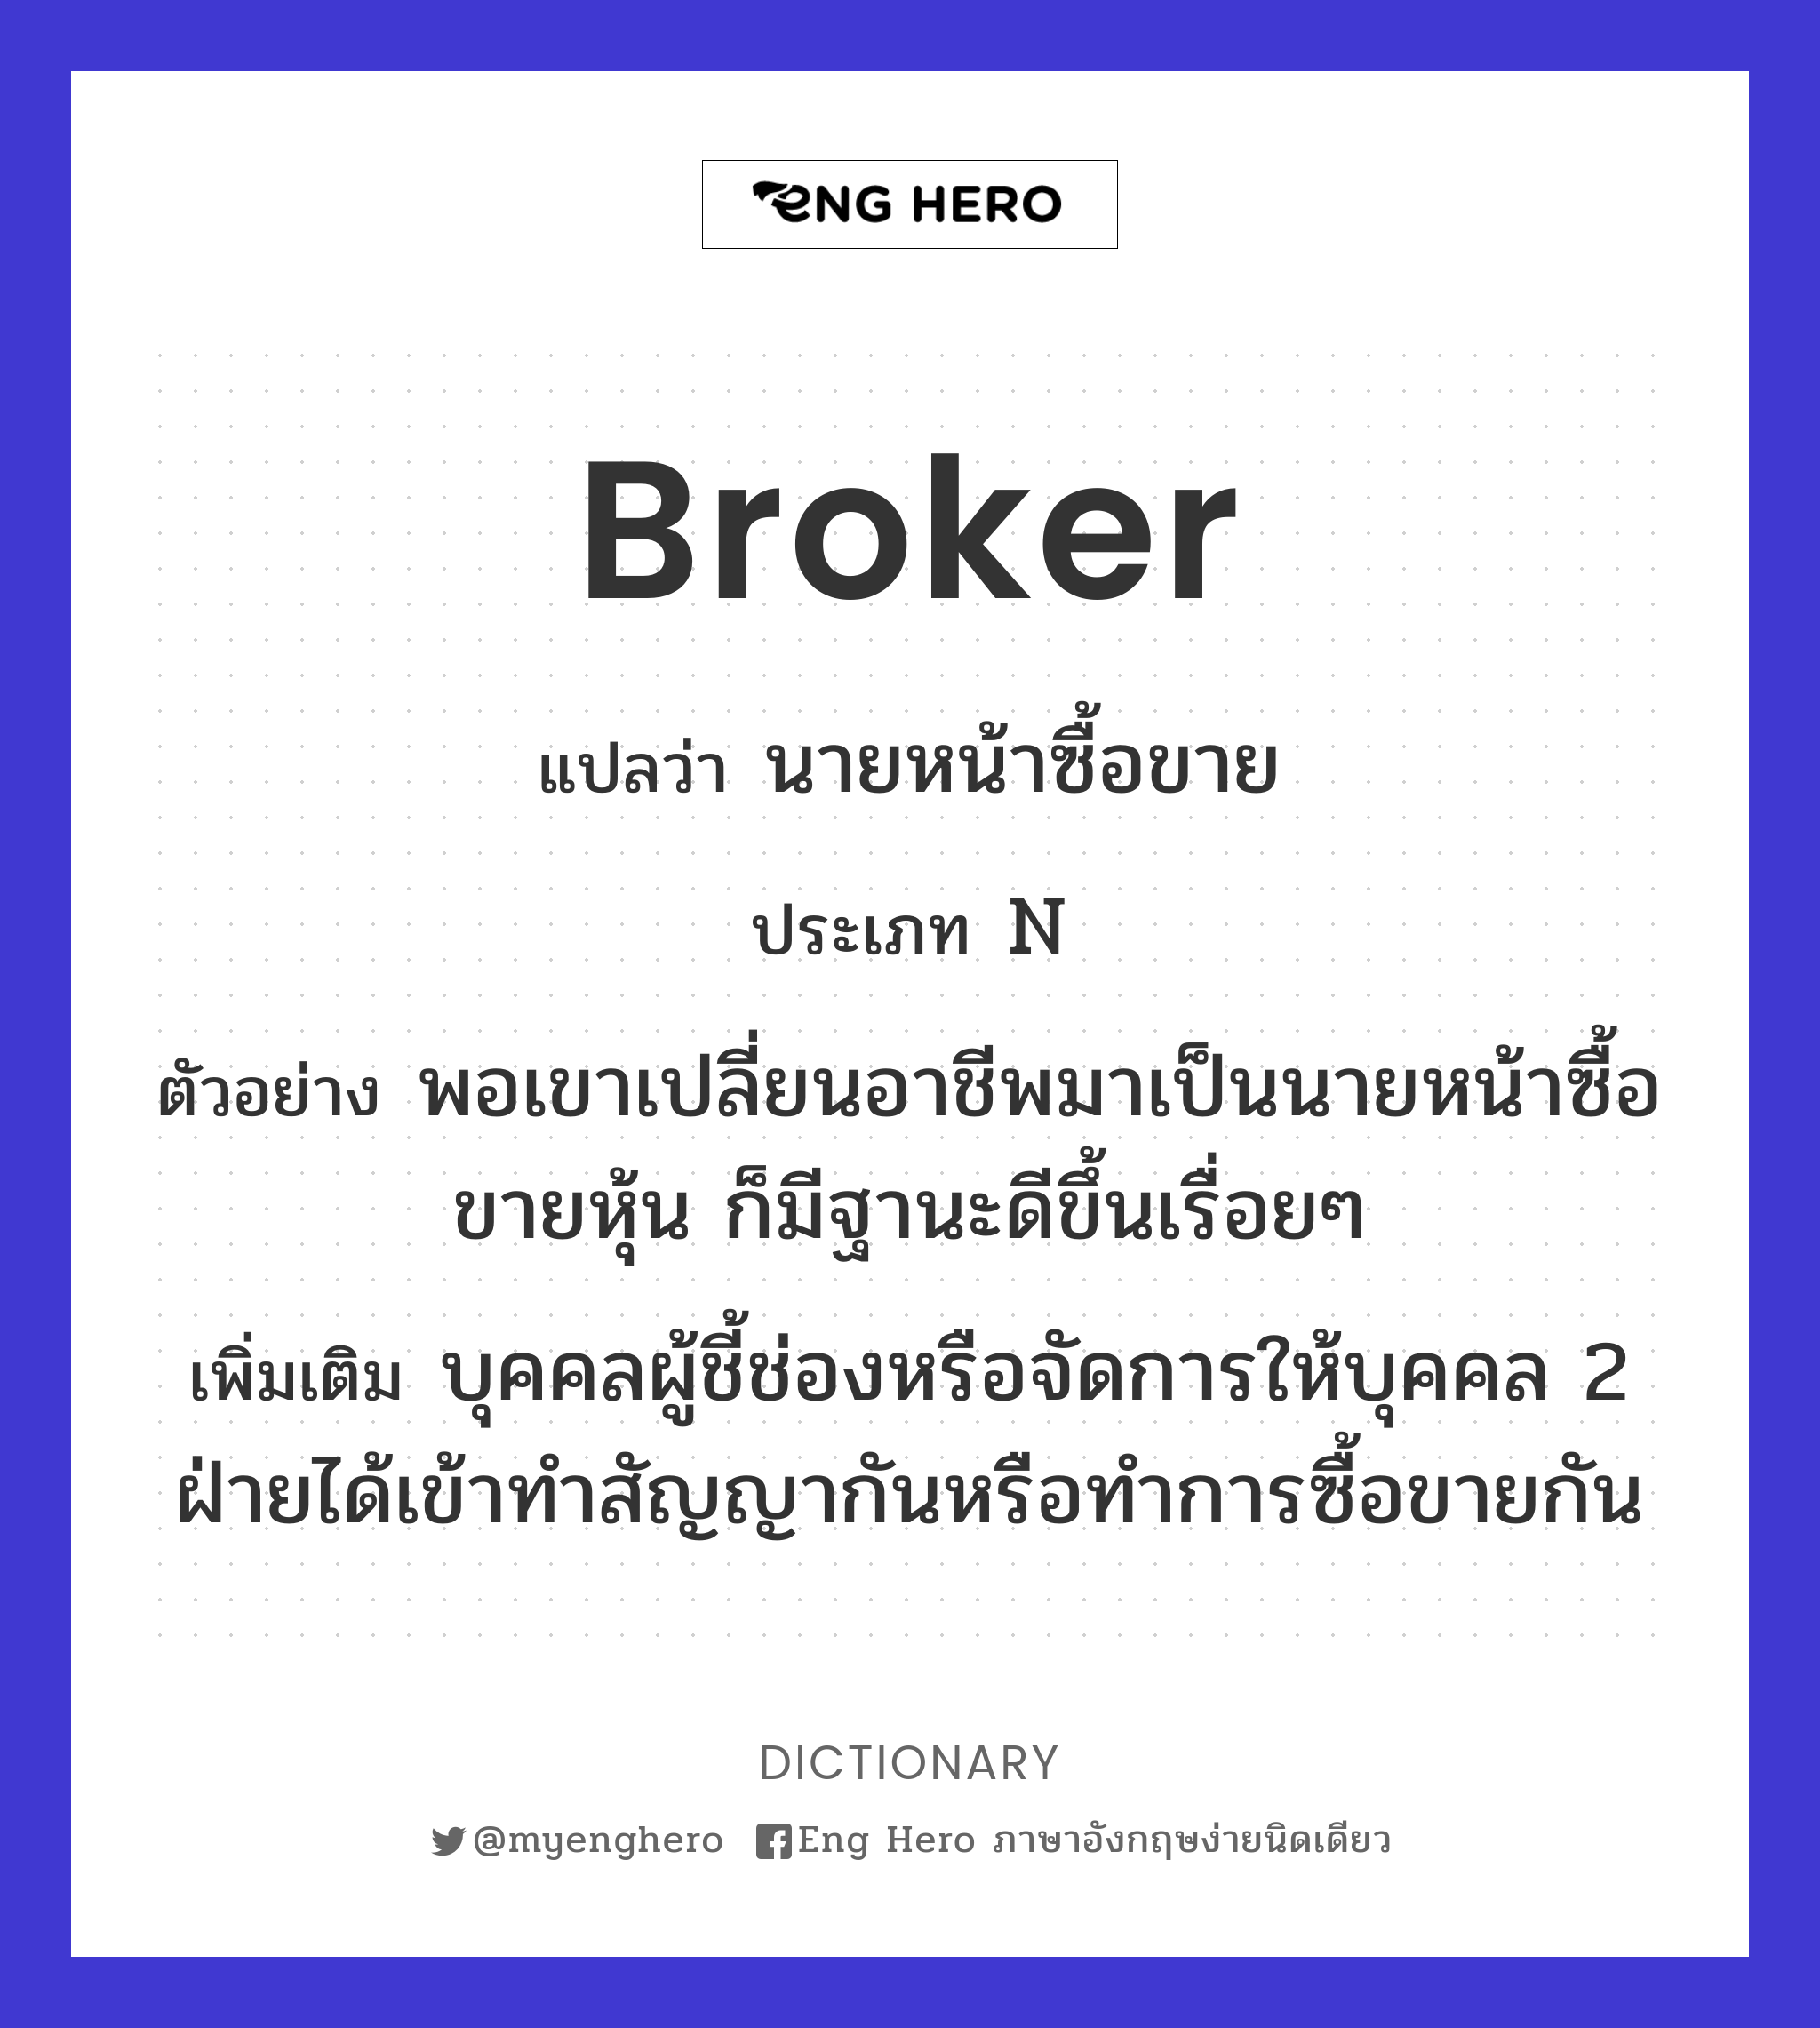 broker